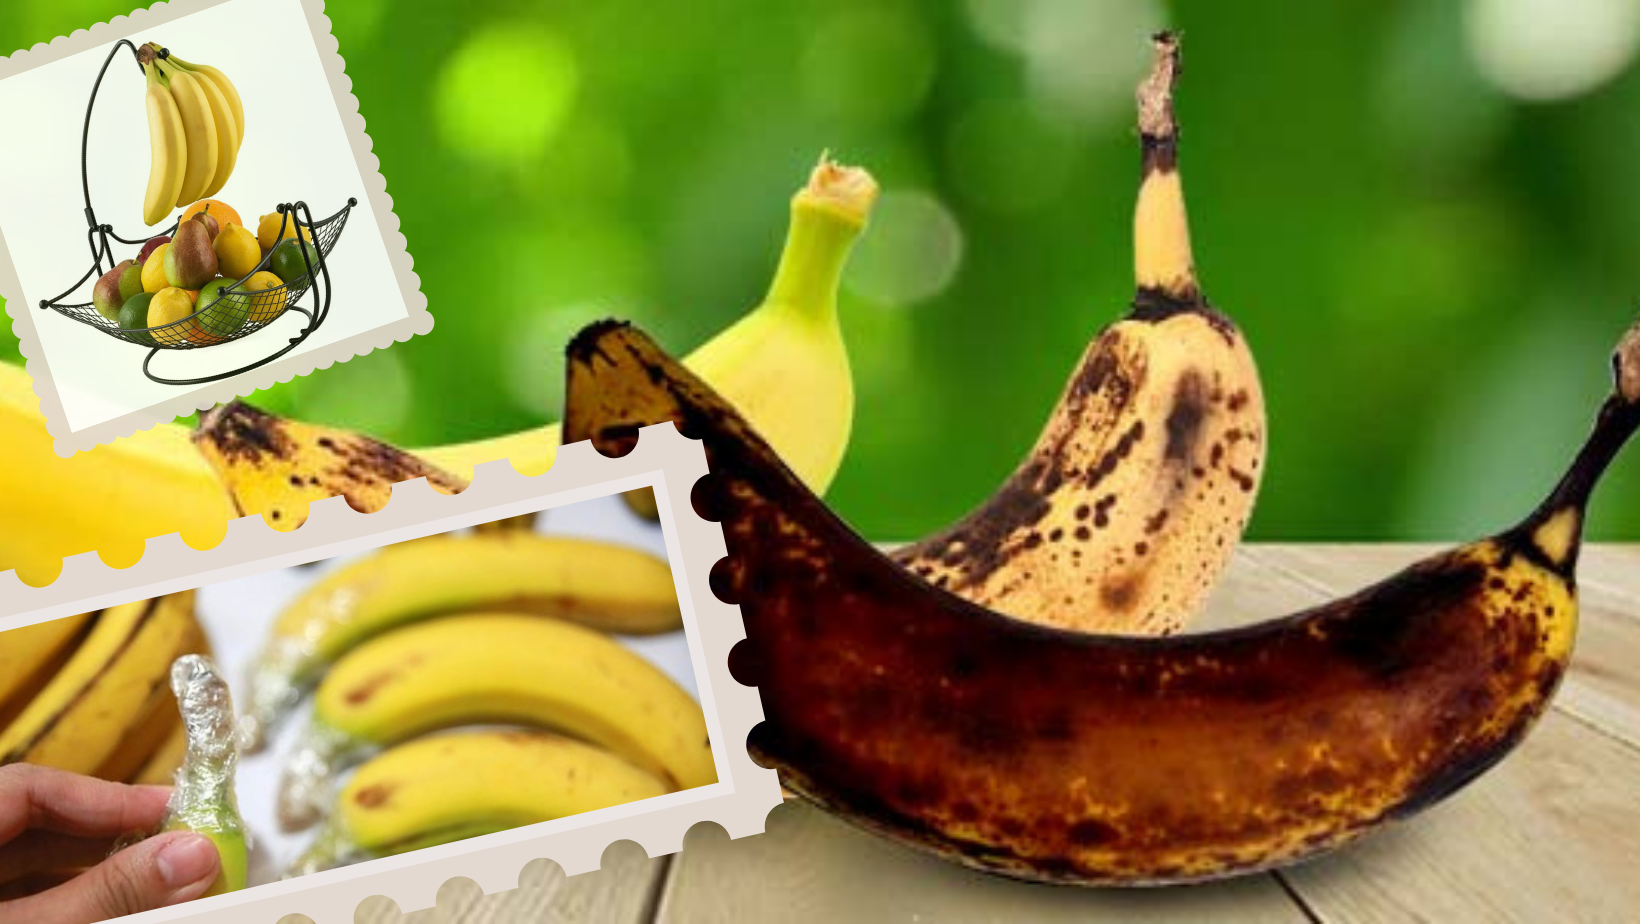 केळी पिकून काळी पडू नये म्हणून, वापरा या 6 सोप्या ट्रिक्स